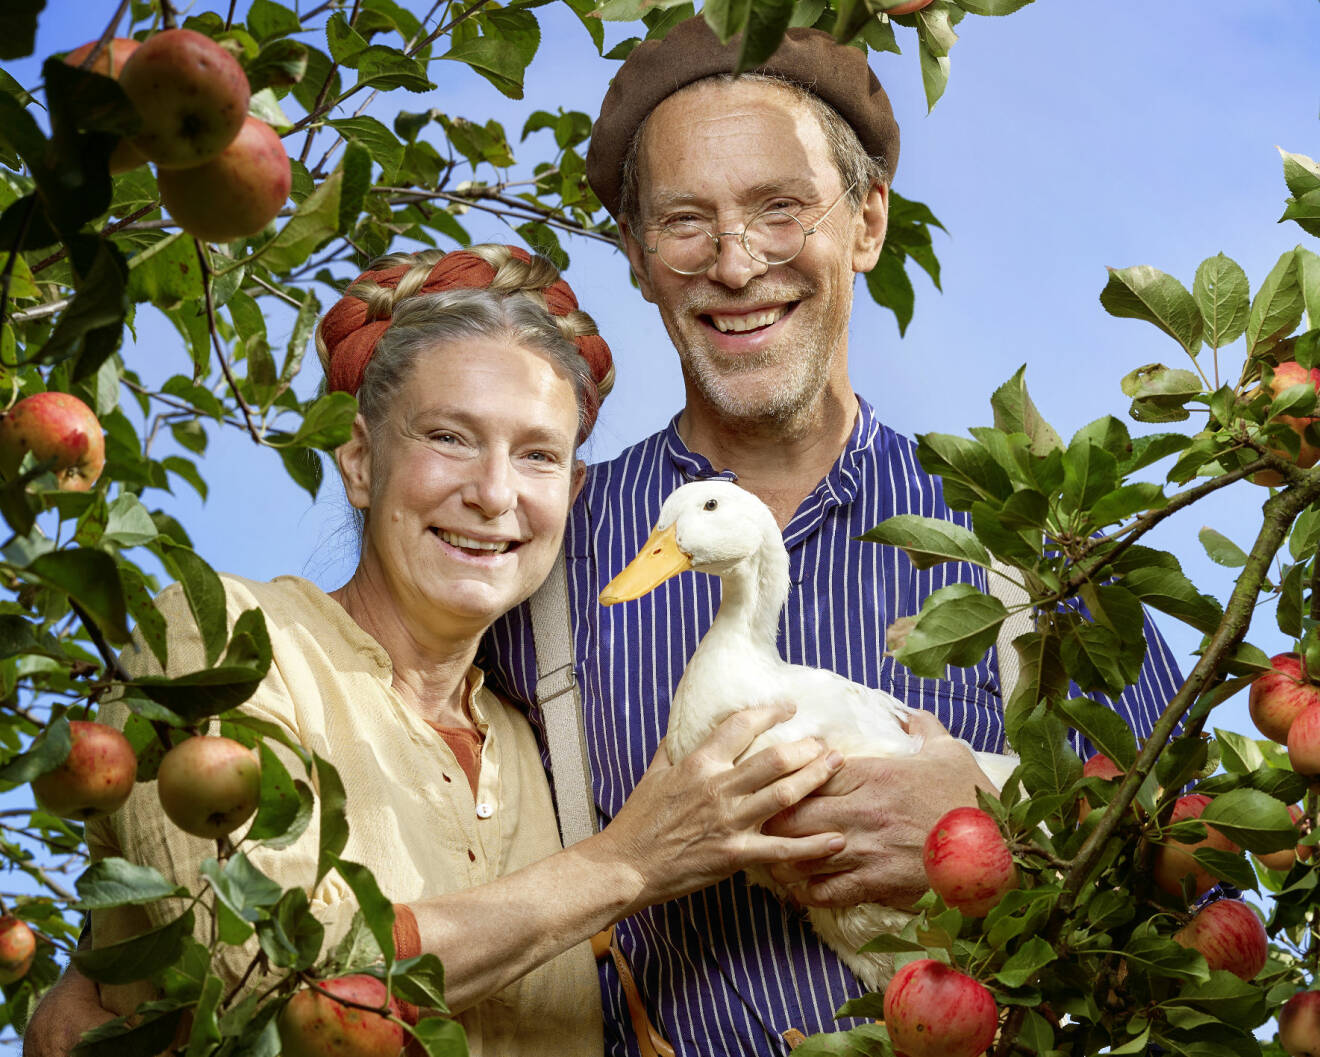 Pressbild från nya säsongen av Mandelmanns gård som har premiär i januari 2021. Marie och Gustav Mandelmann bland äppelträden tillsammans med en anka.